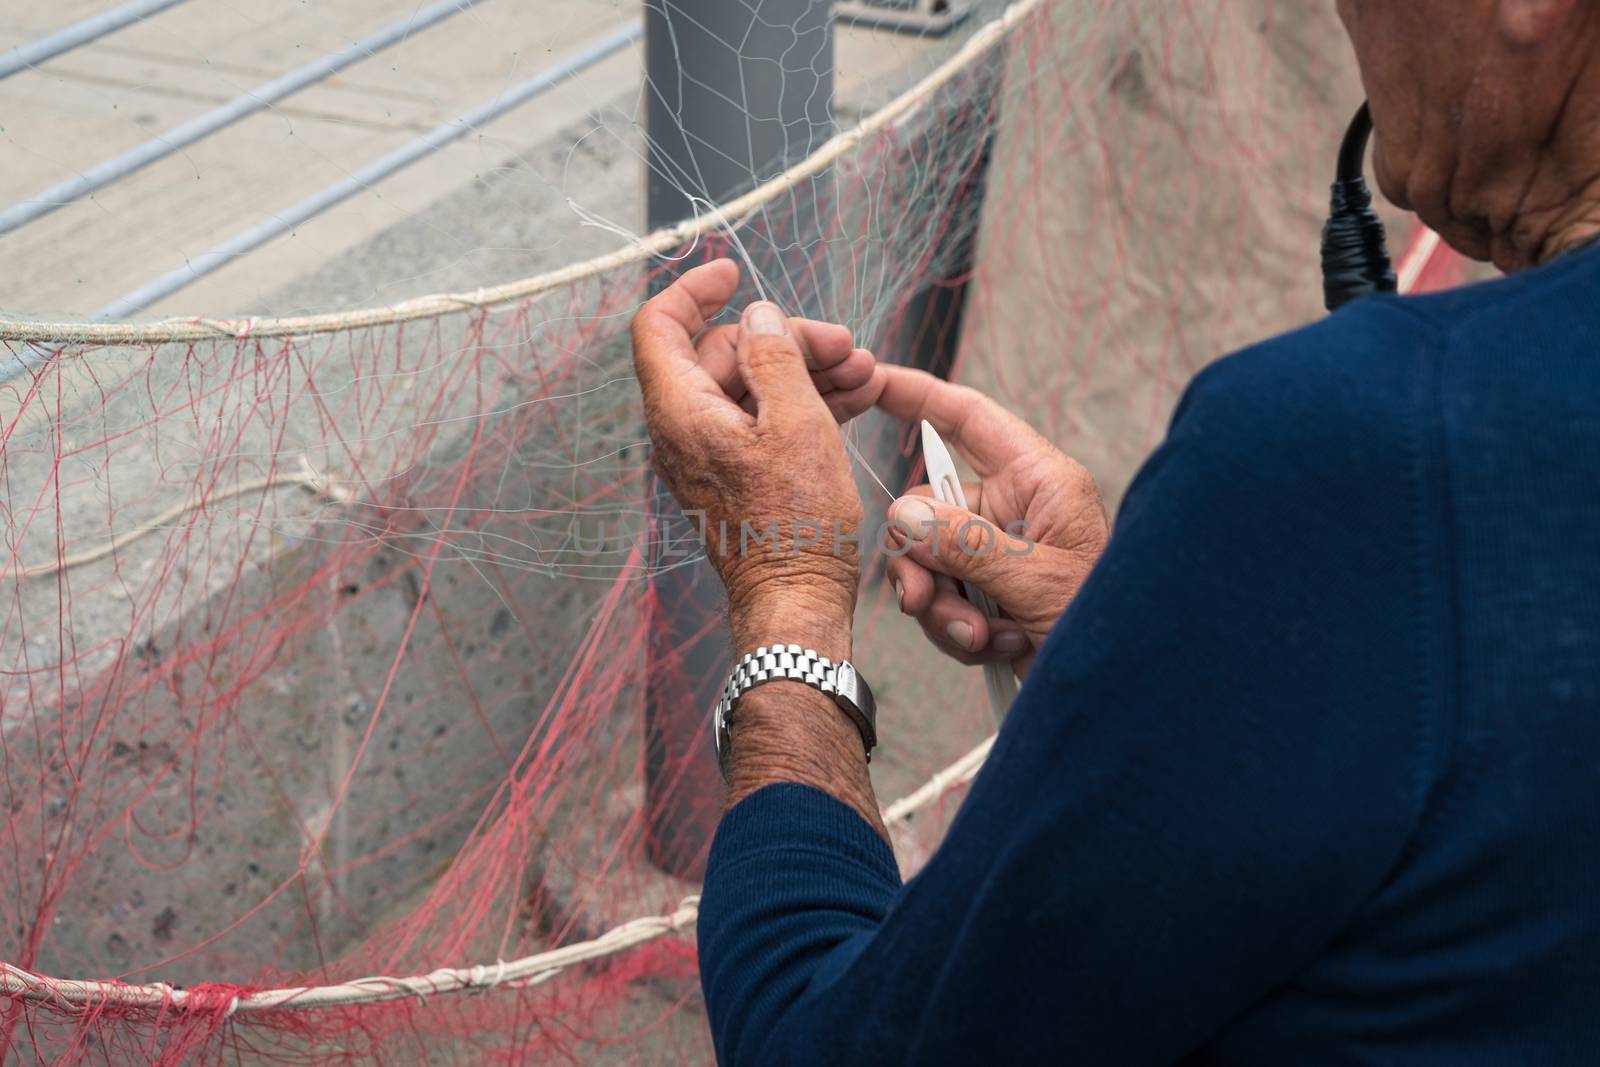 Fisherman reparing fishing net by Robertobinetti70